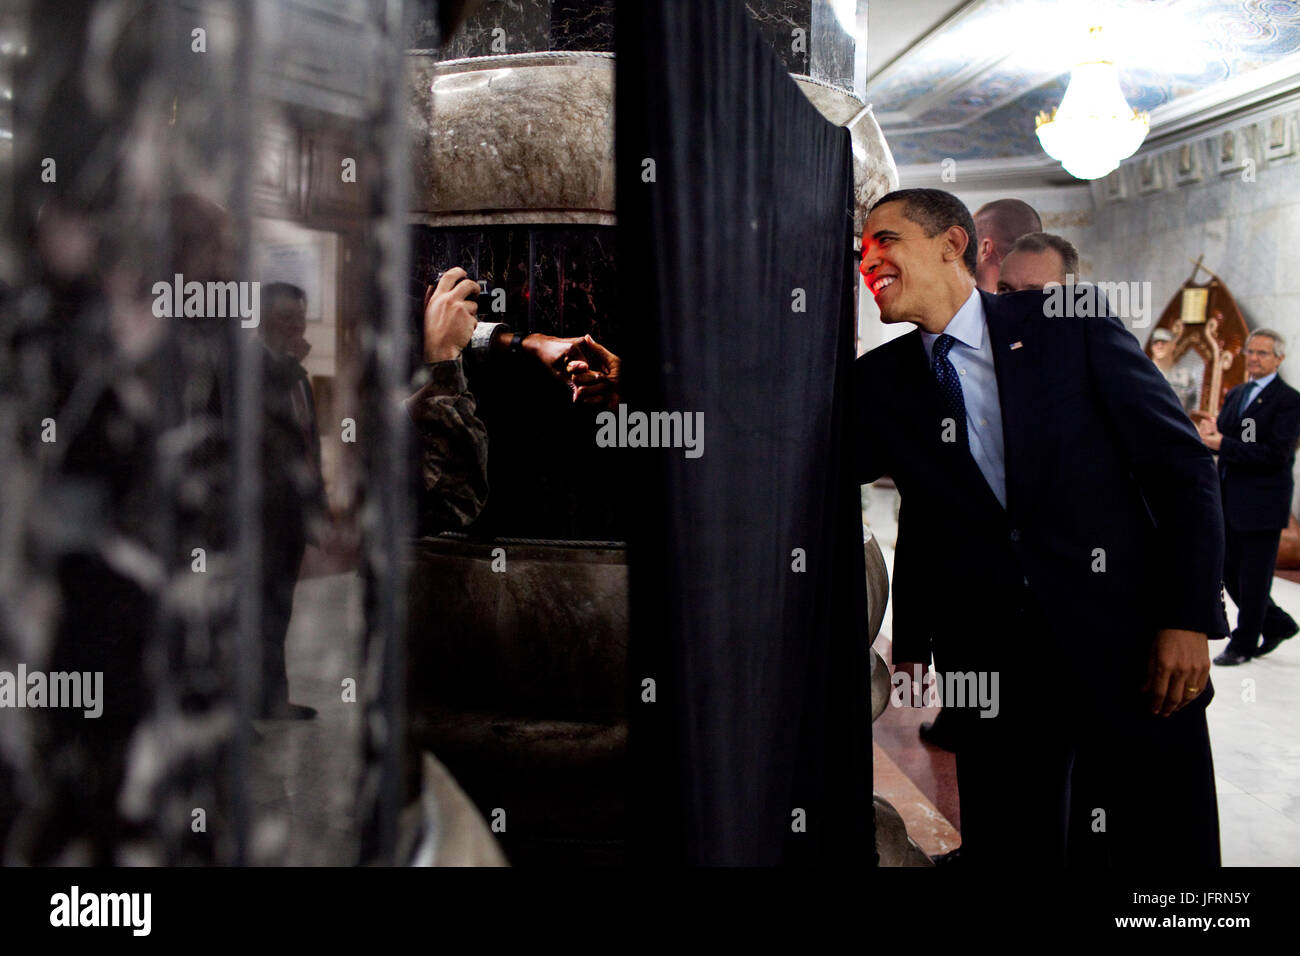 Le président Barack Obama arrive derrière un pilier de serrer la main des troupes américaines au camp Victory à Baghdad, Iraq 4/7/09. Photo Officiel de la Maison Blanche par Pete Souza Banque D'Images